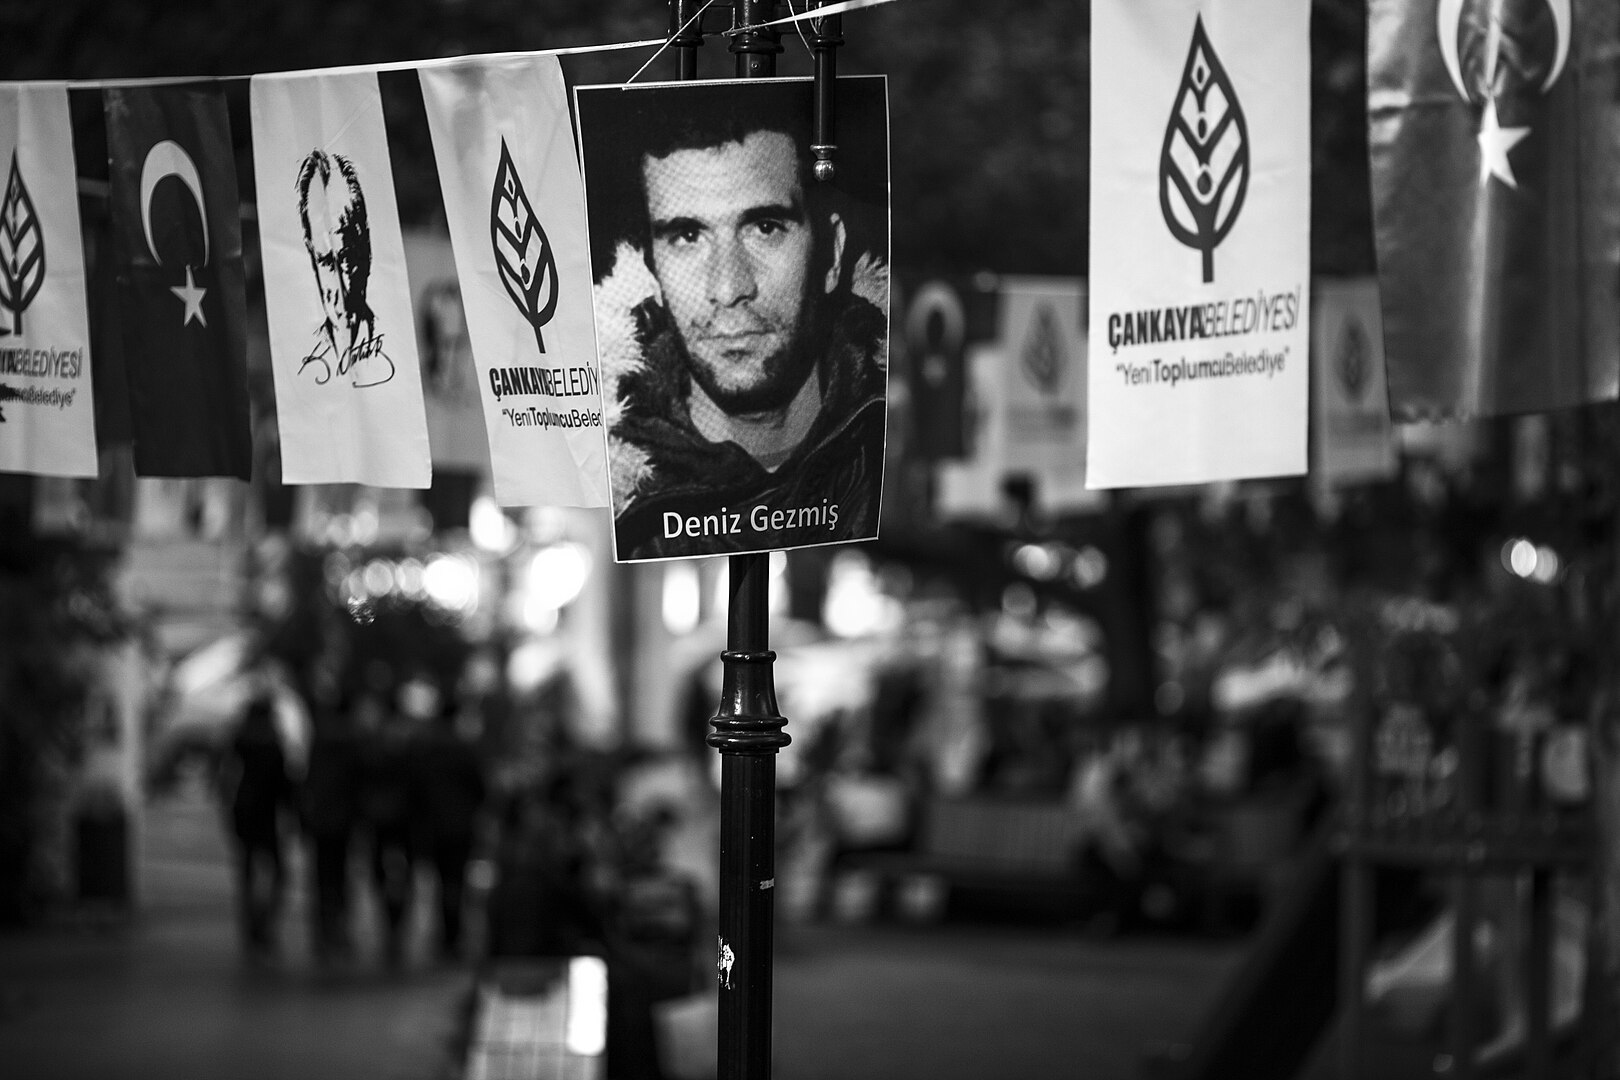 Fotografie eines jungen Mannes an einem Laternenpfahl, daneben andere politische Plakate